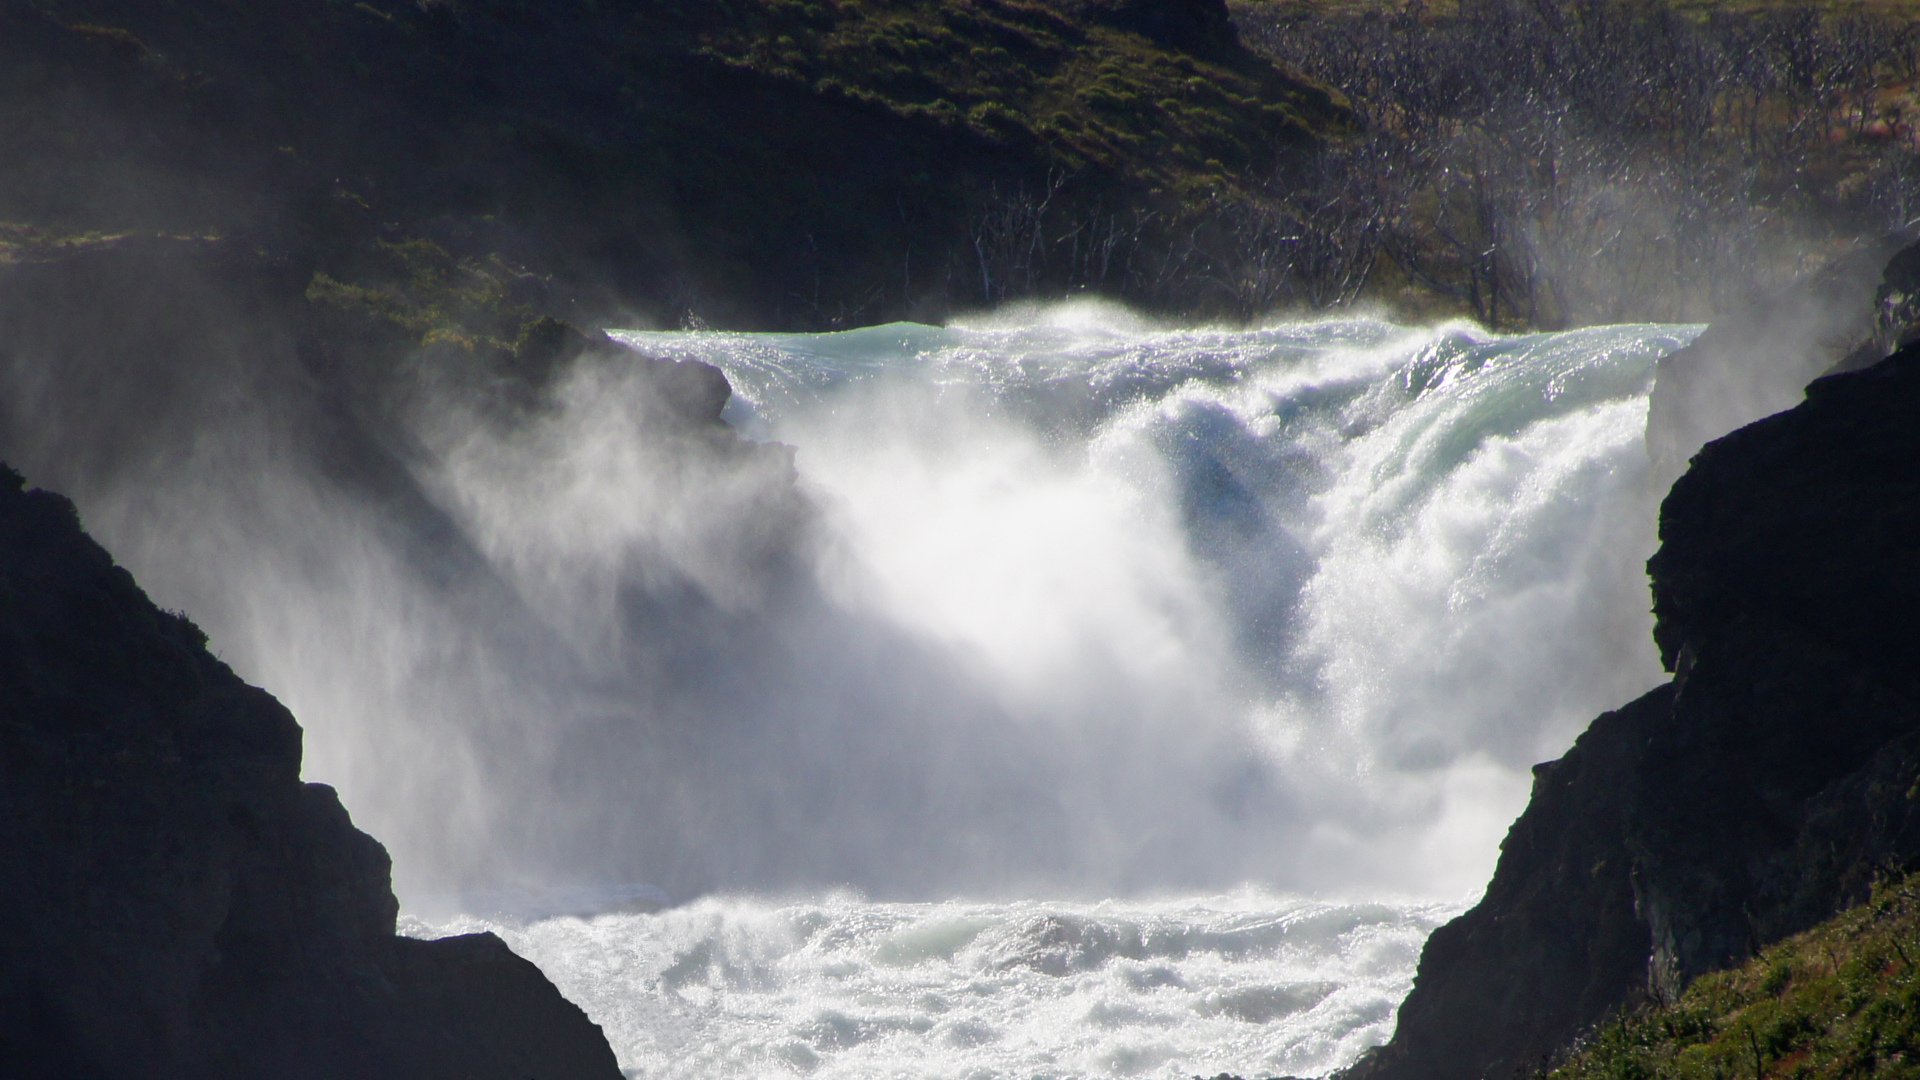 Fotostrecke Wasser 13: Wasserfall in Patagonien